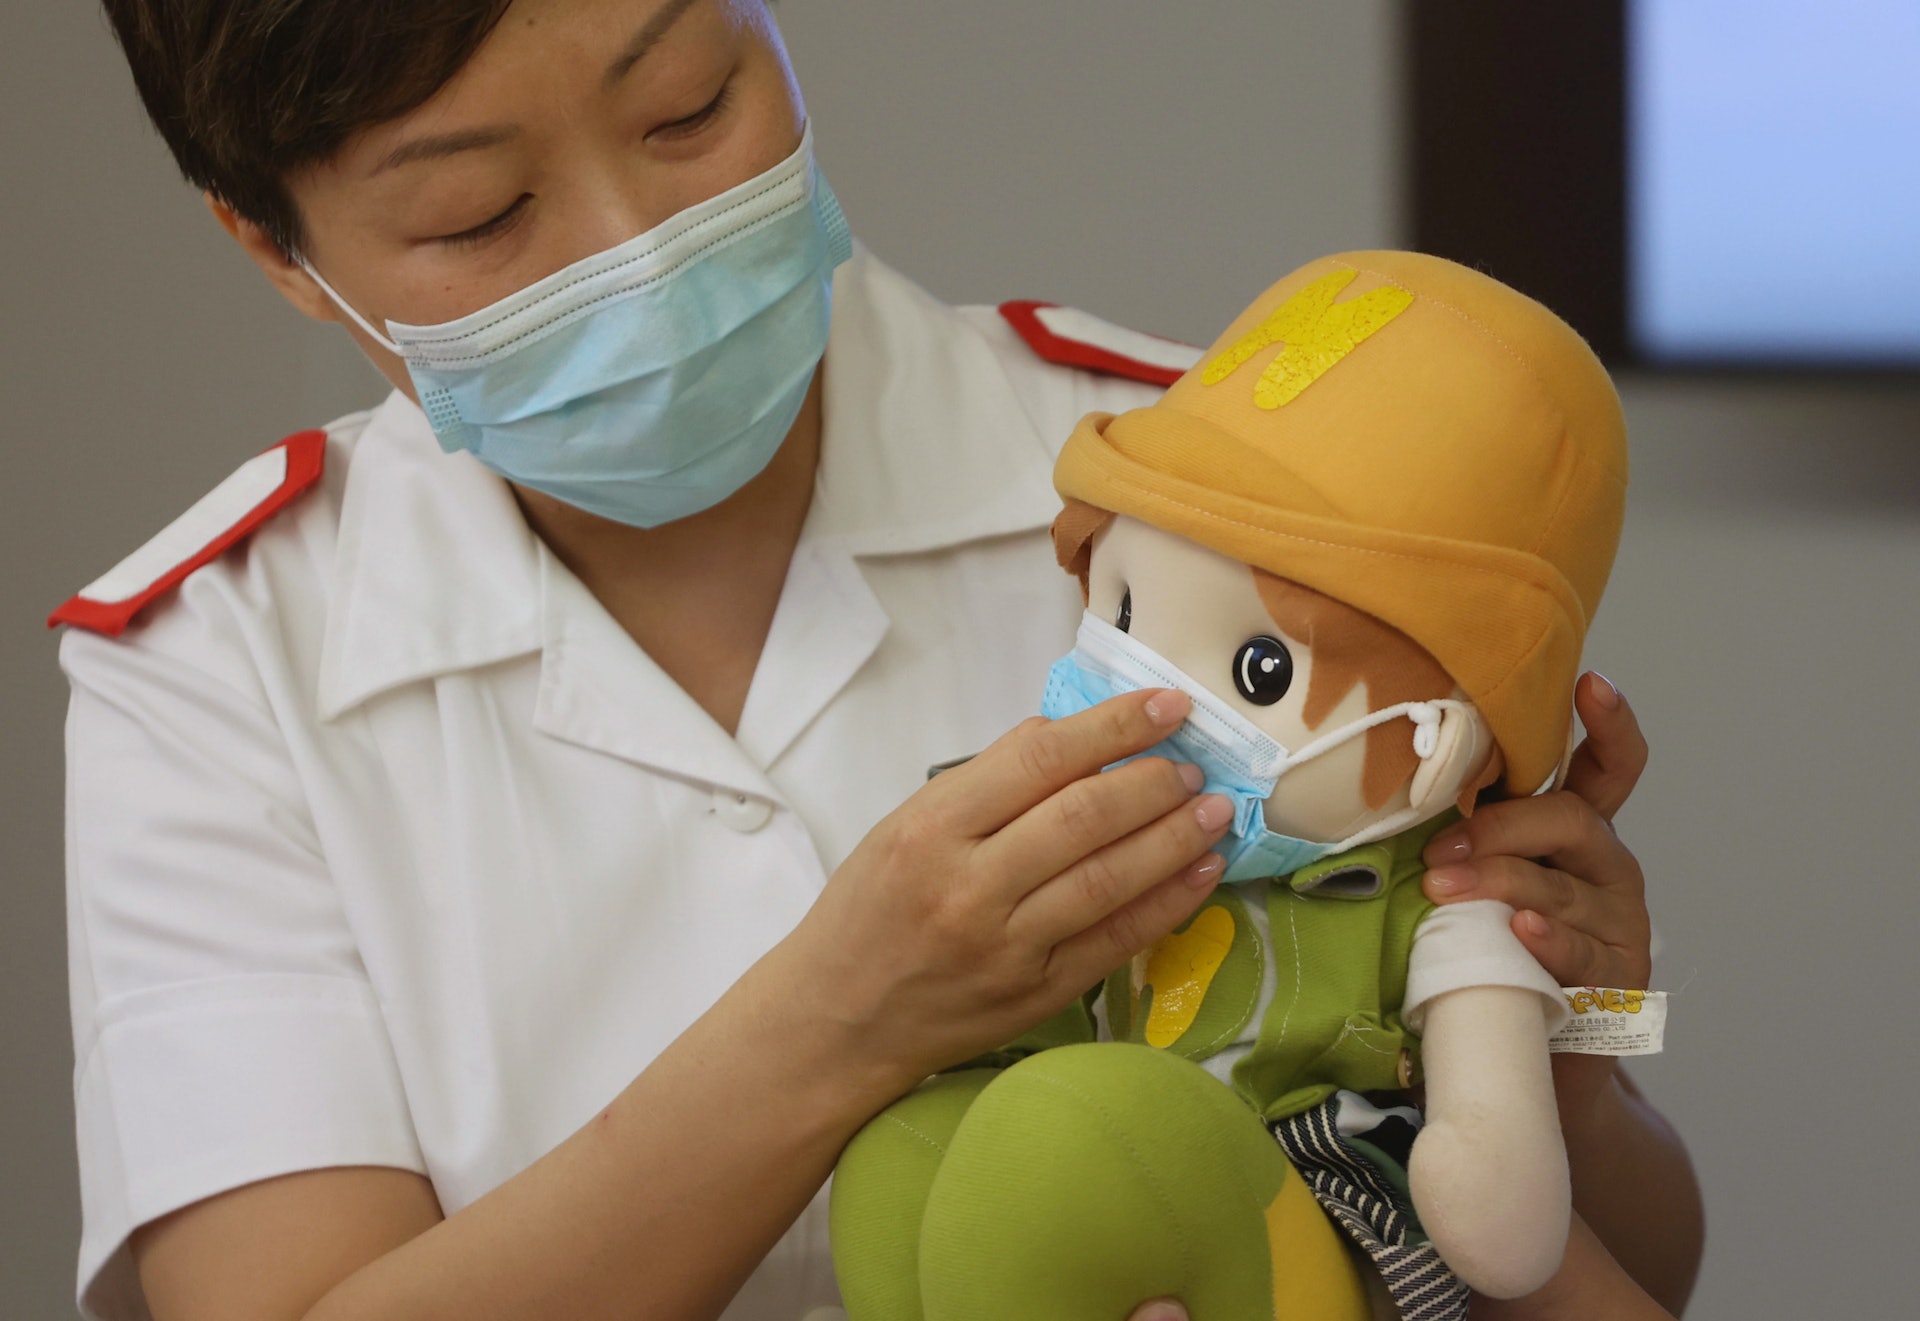 瑪嘉烈醫院資深護師（傳染病中心）陳瑩斐表示在校內戴好口罩是另一個防止校內爆疫的方式，要留意口罩是否緊貼面部，並可完全覆蓋口、鼻及下巴。（余俊亮攝）